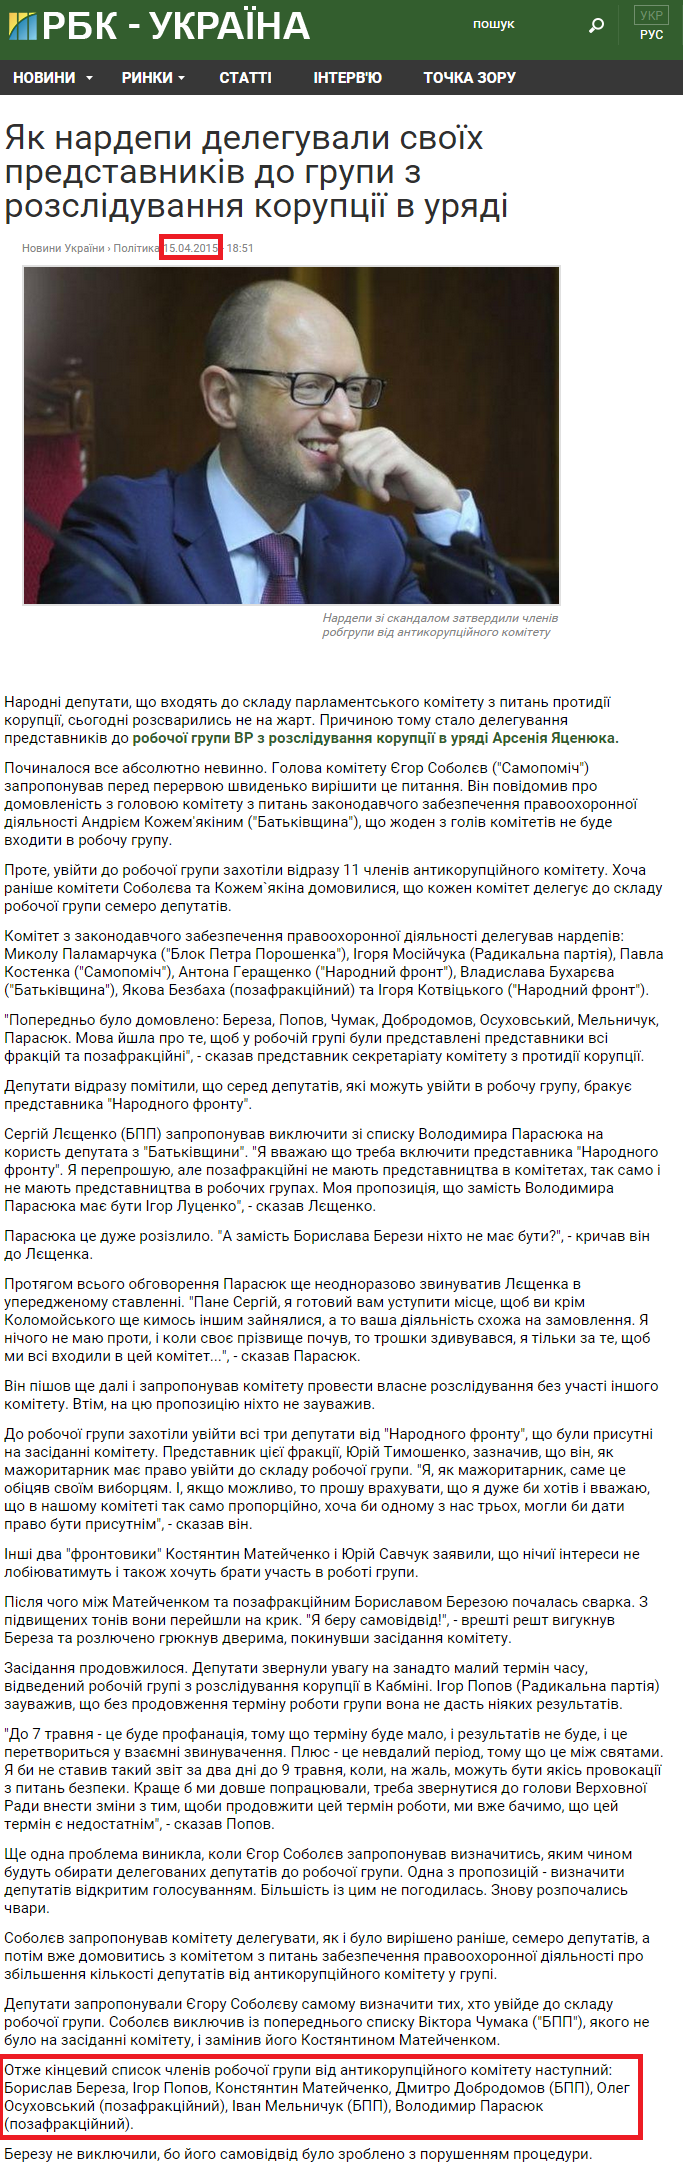 http://www.rbc.ua/ukr/analytics/nardepy-delegirovali-svoih-predstaviteley-1429113116.html